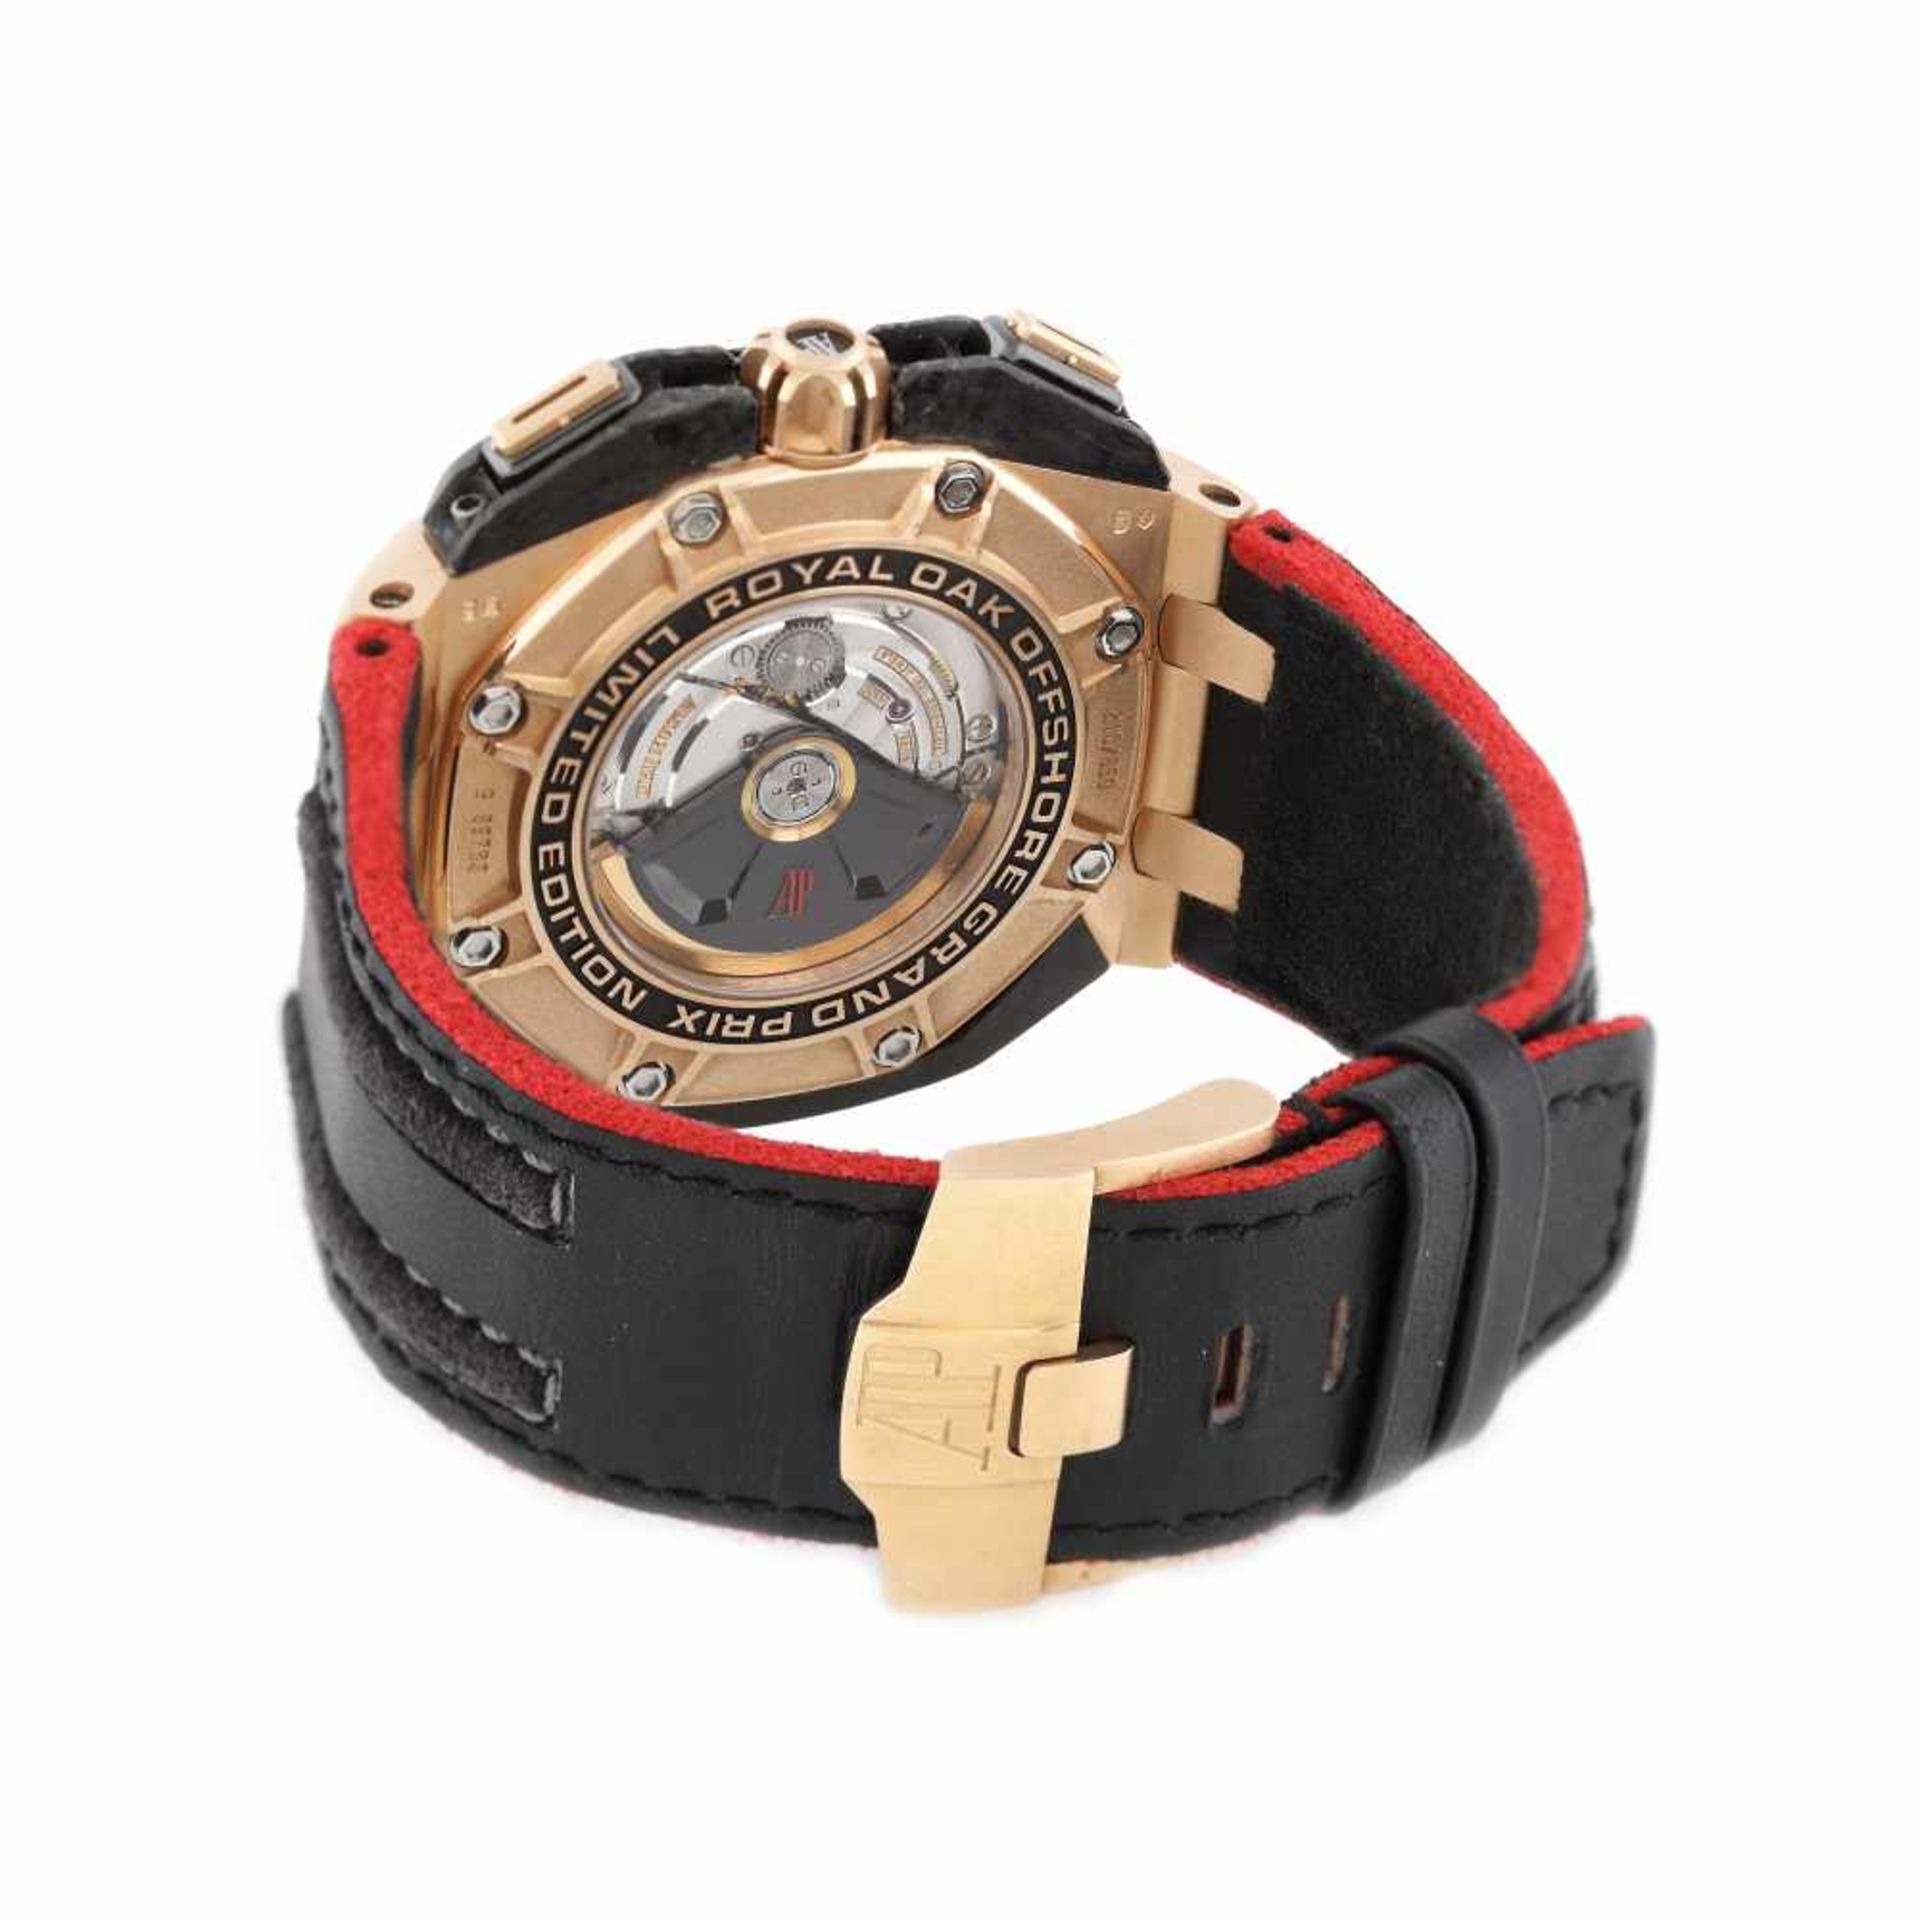 Audemars Piguet Royal Oak Offshore Grand Prix wristwatch, men, 210/650 - Image 2 of 4